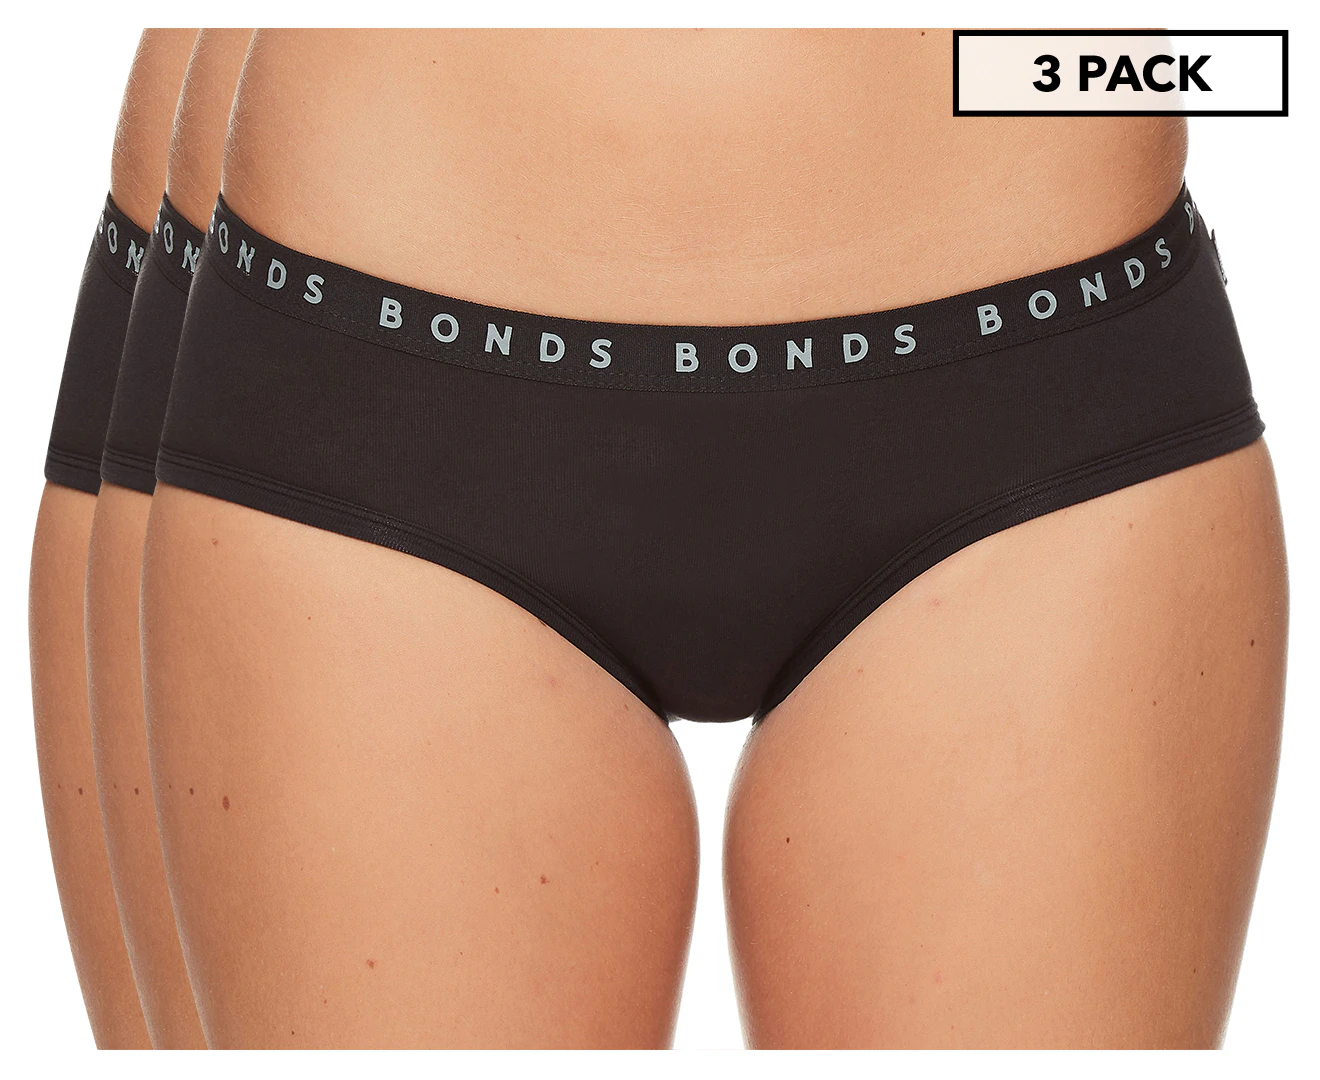  Bonds Underwear Ladies Womens Seamless Lace Underwear